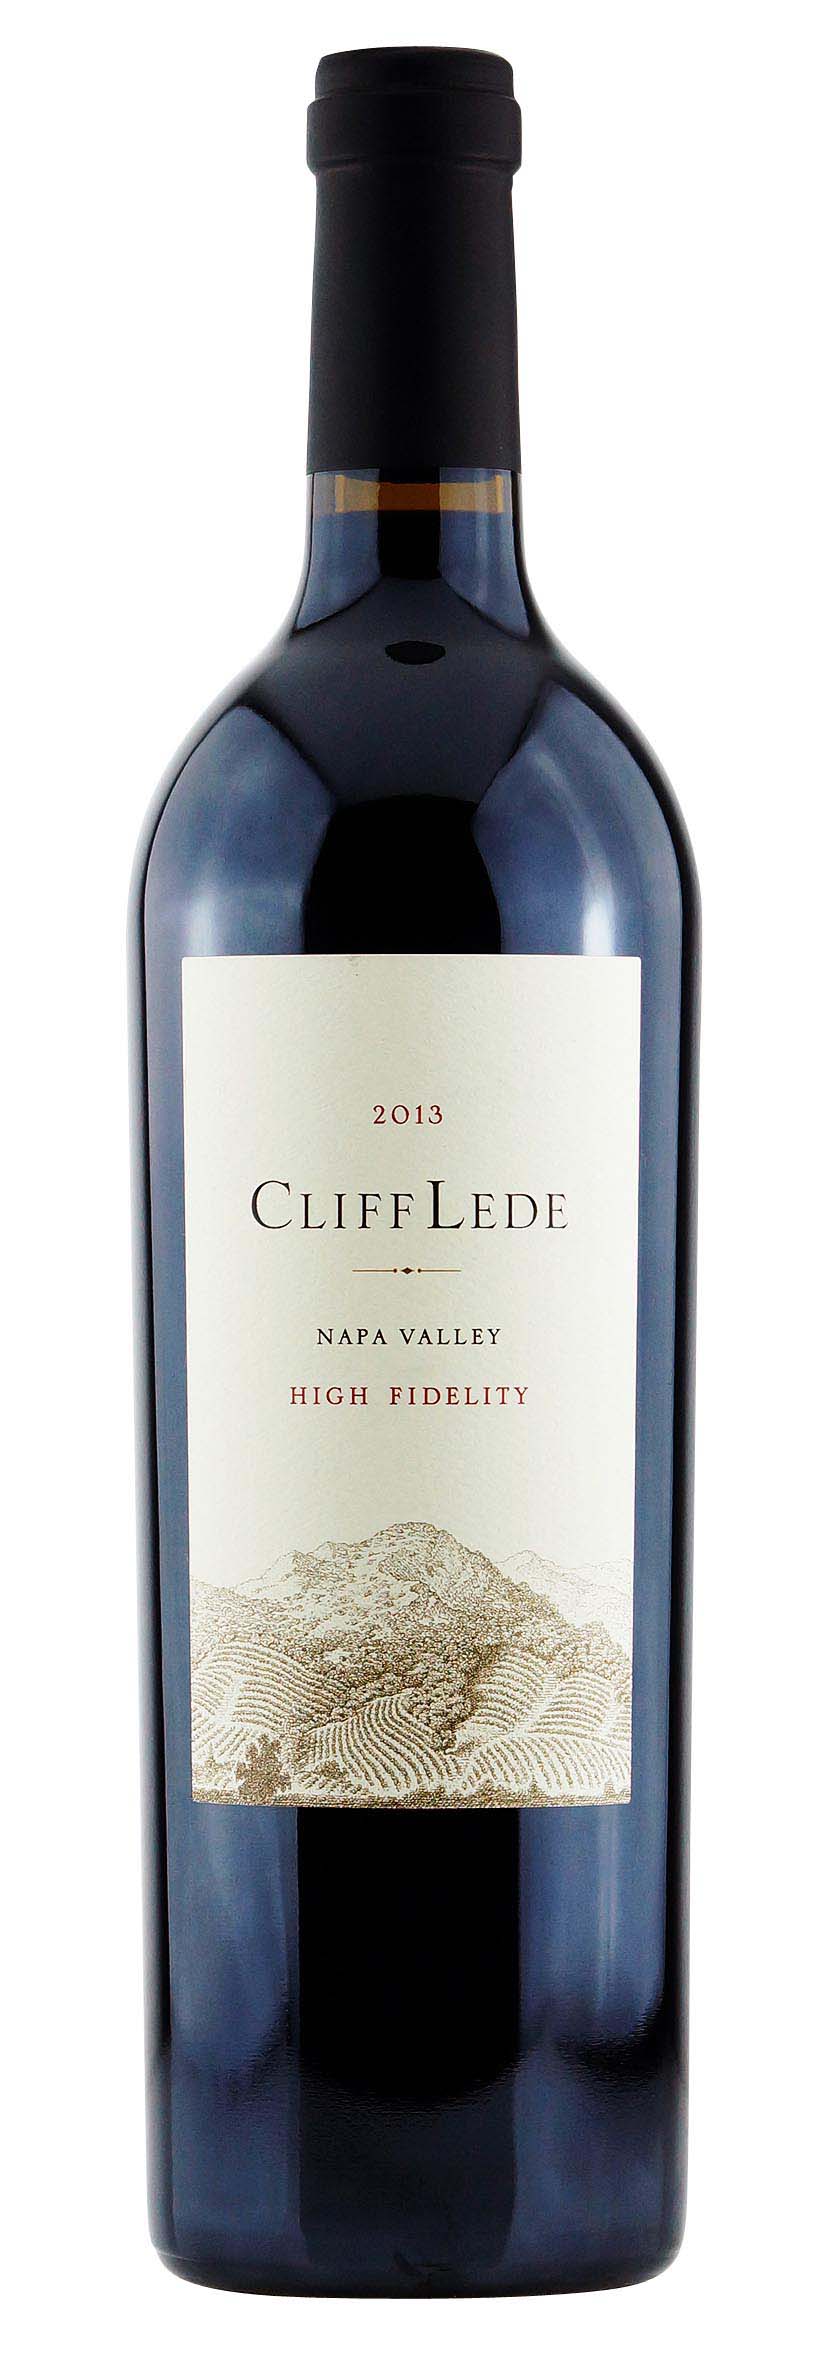 High Fidelity Merlot Napa Valley 2013